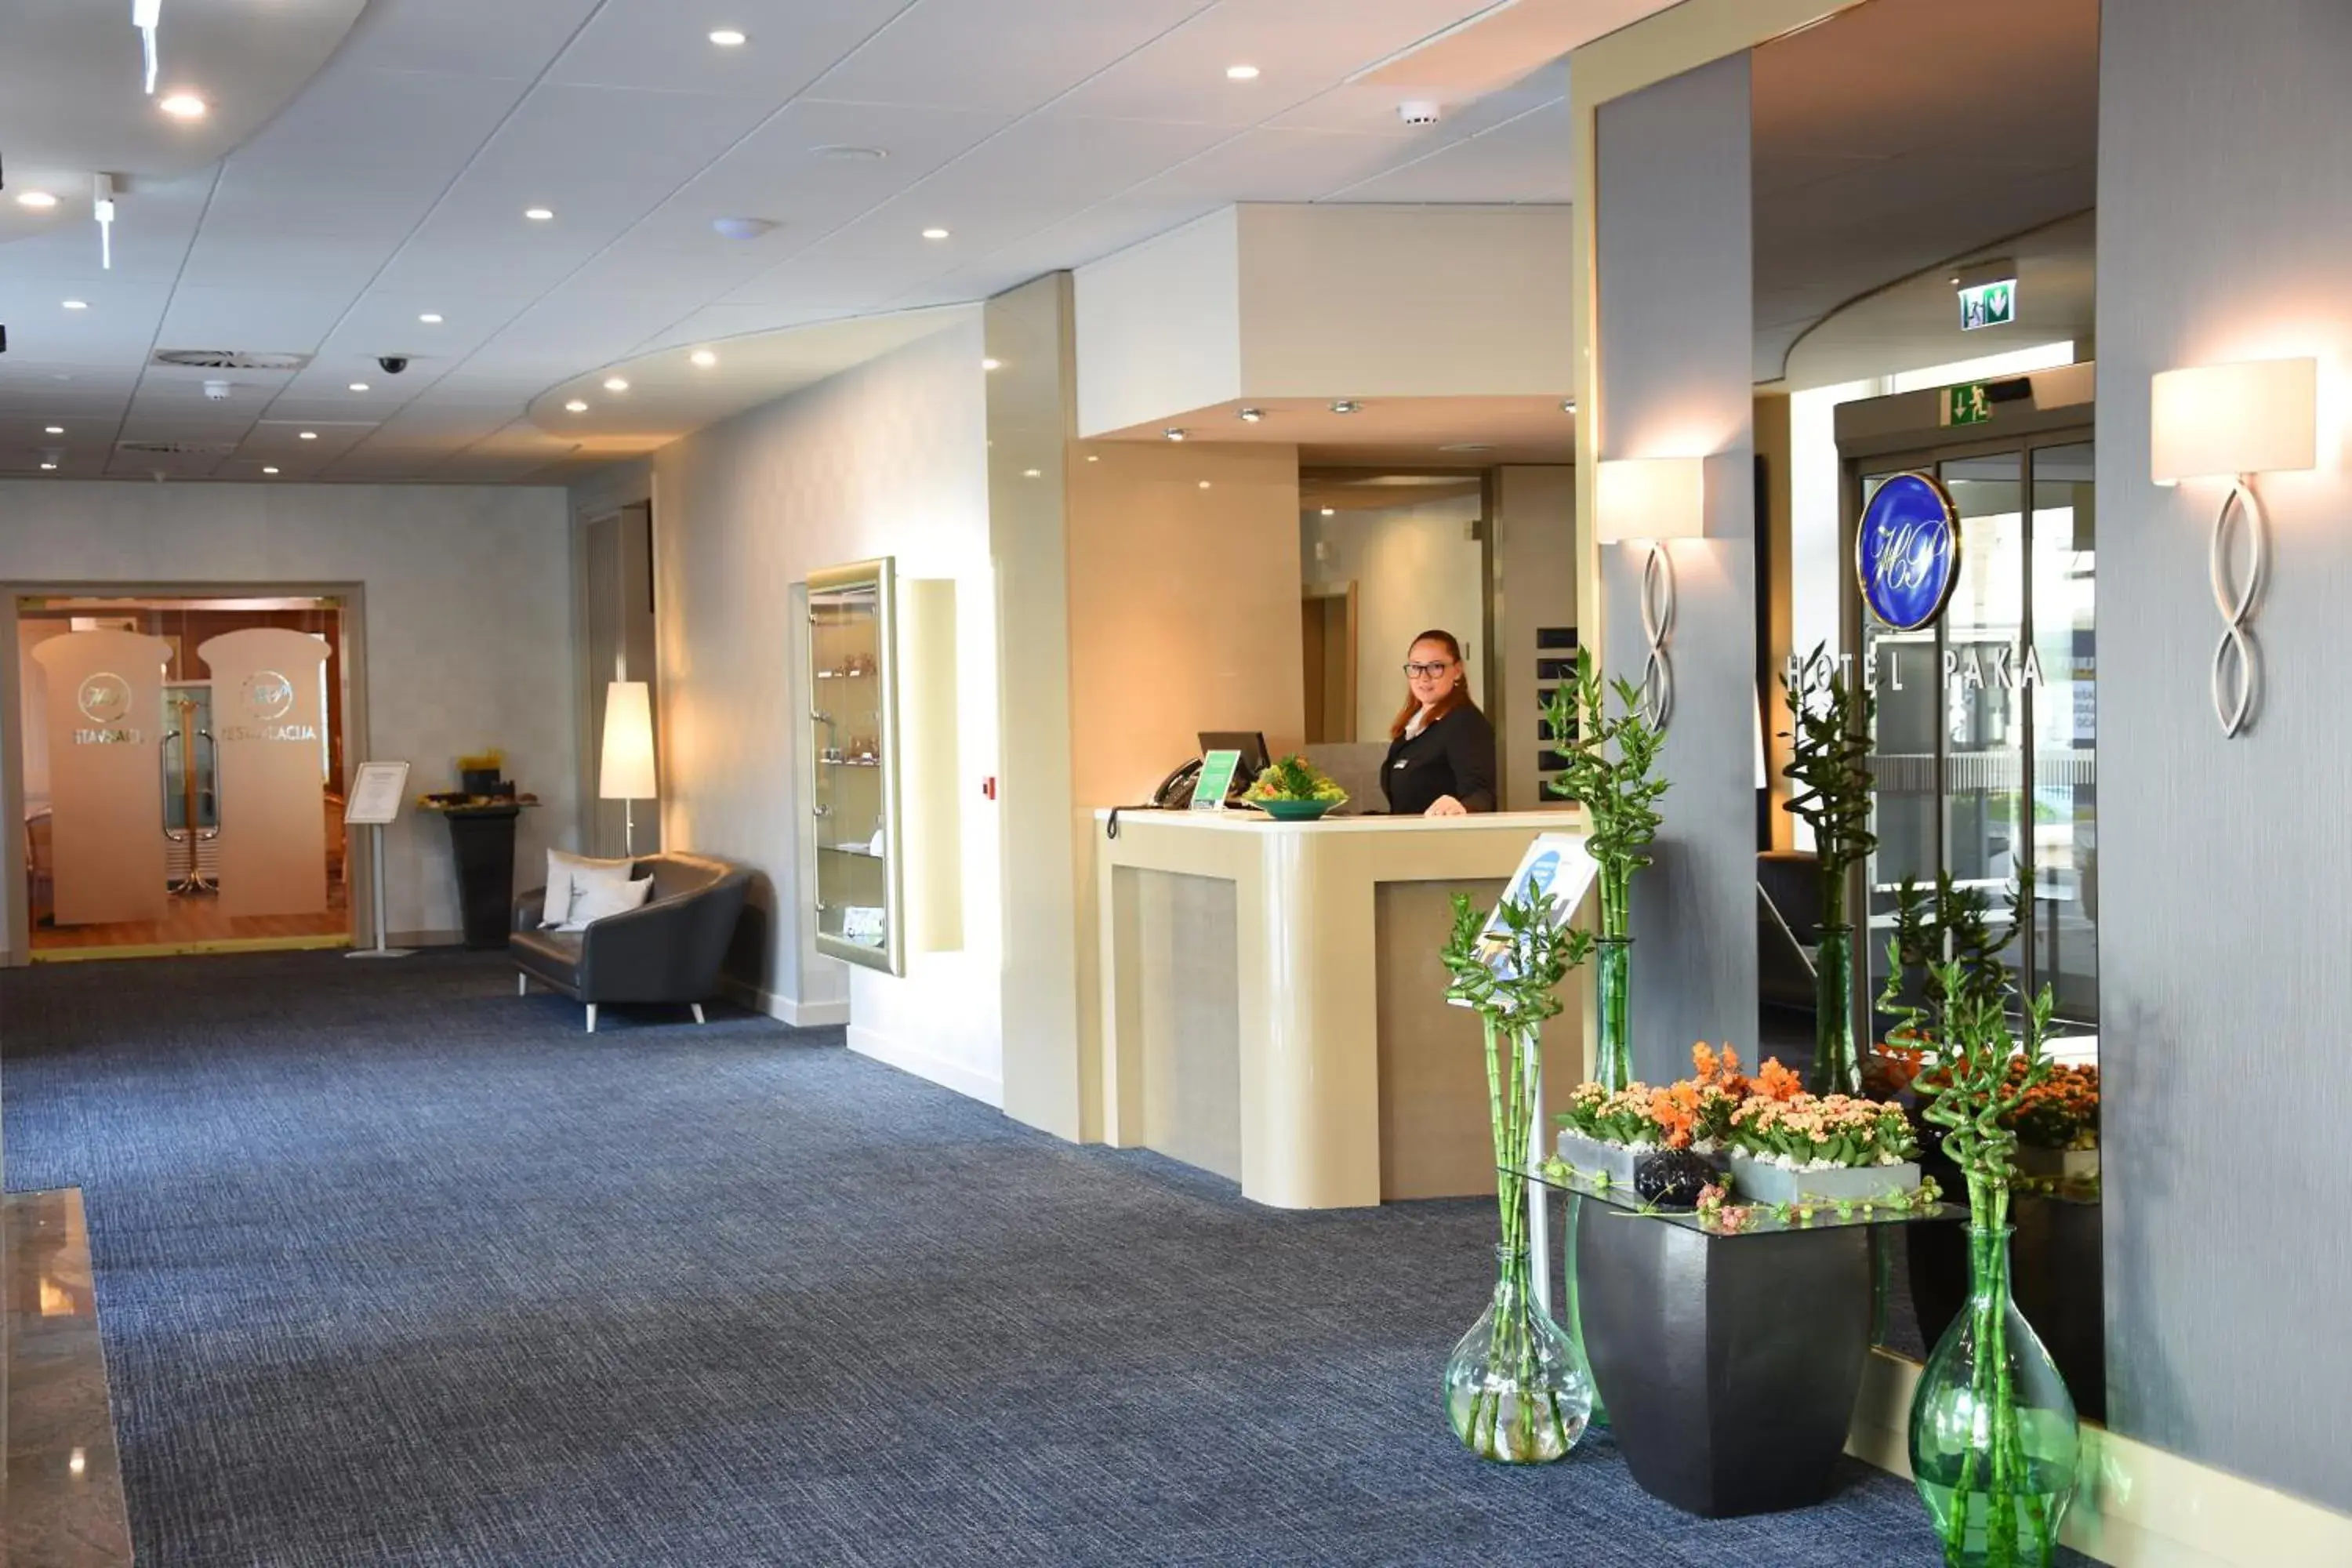 Lobby/Reception in Hotel Paka